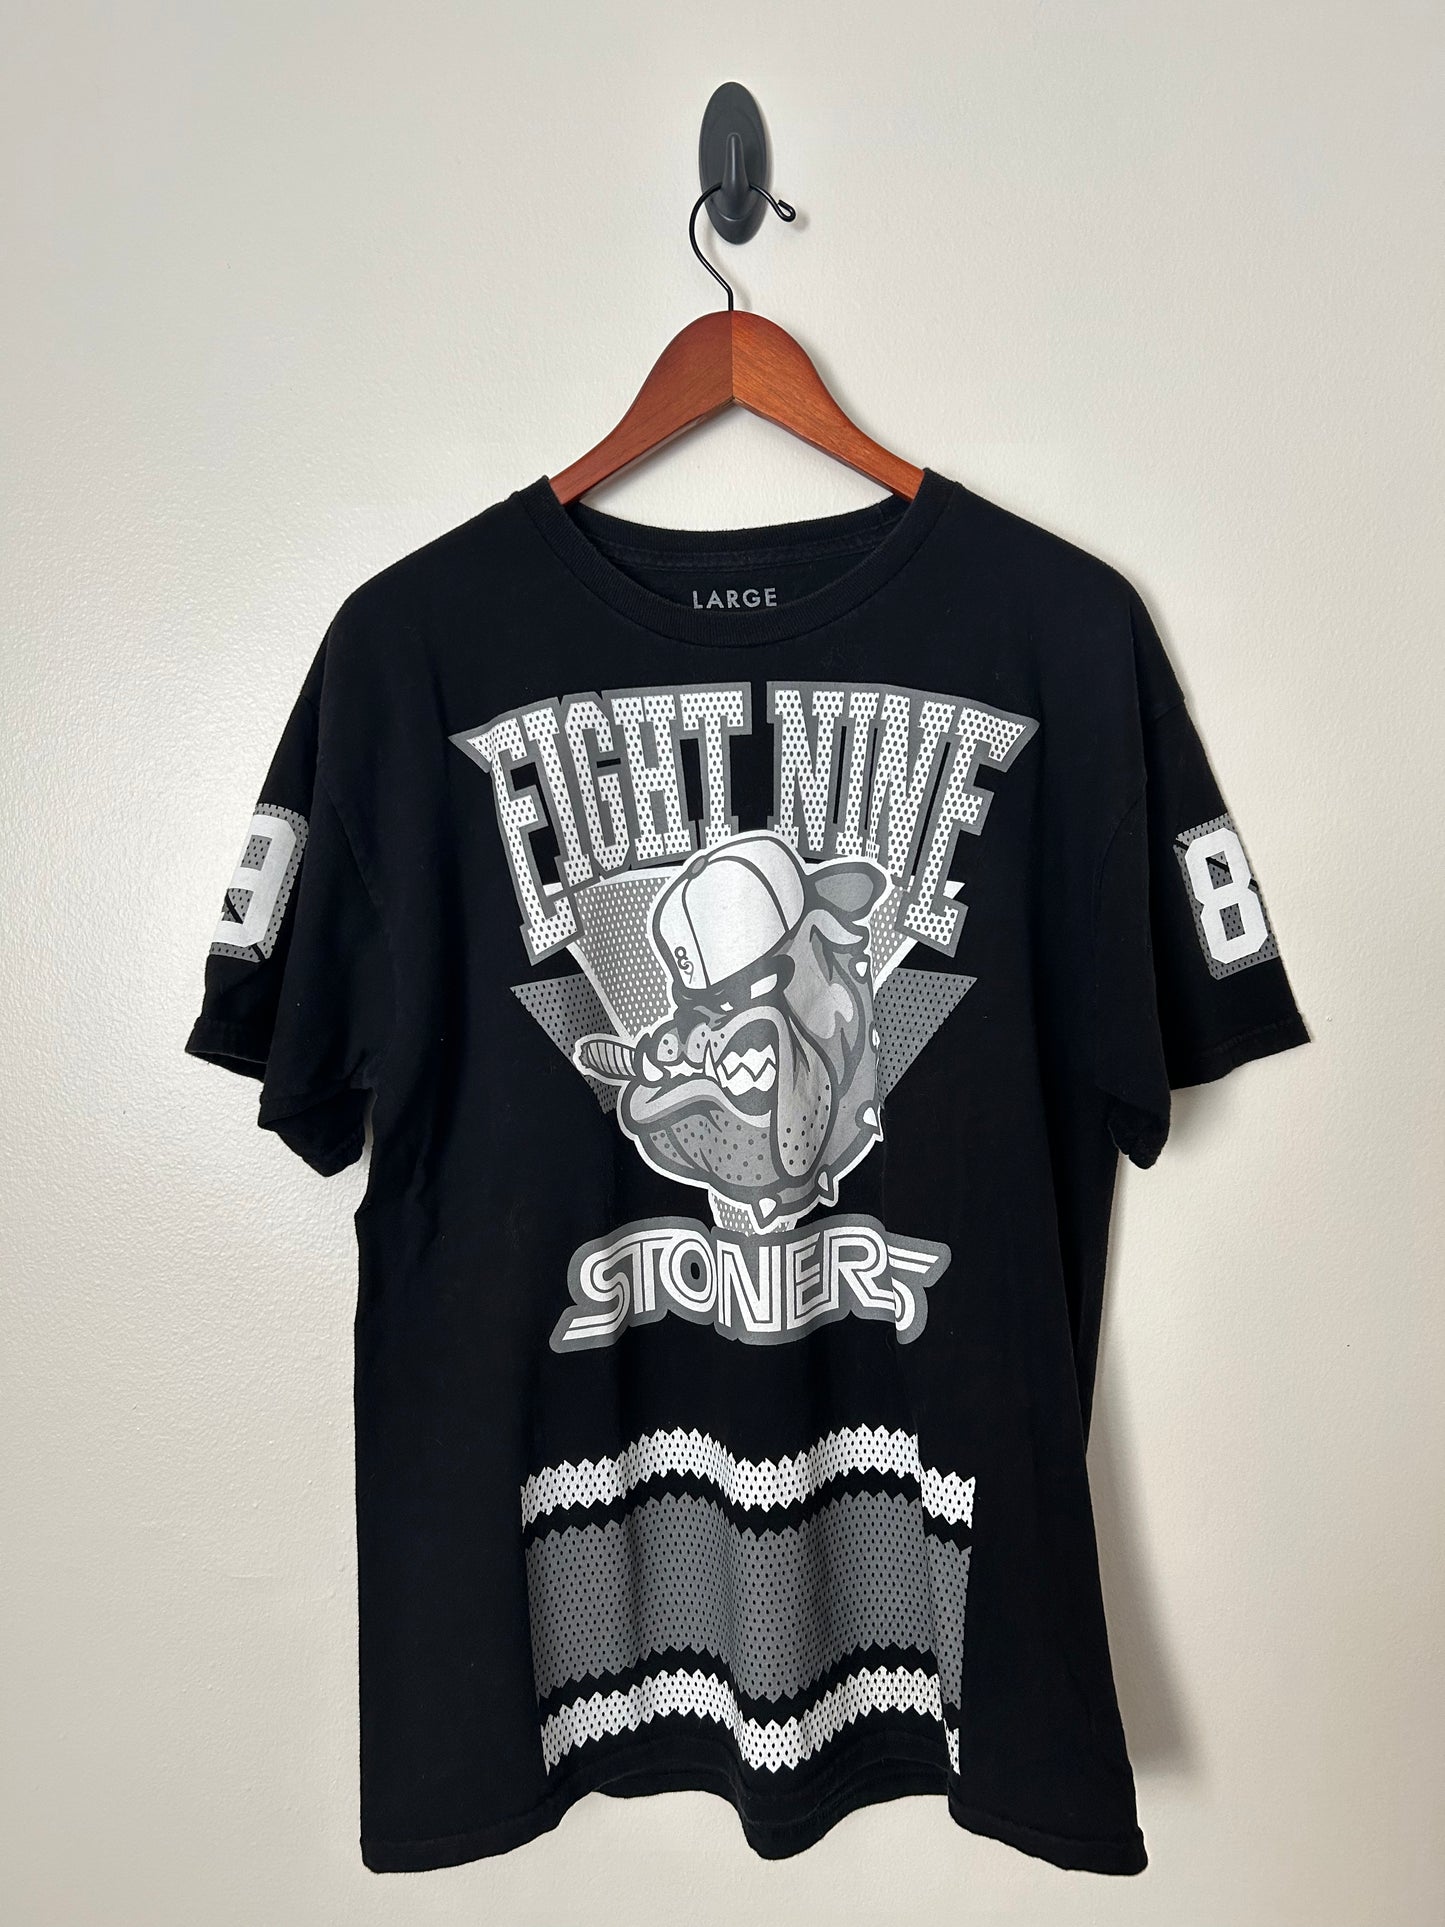 Fight Nine Stoners Loud Pack T-Shirt - L